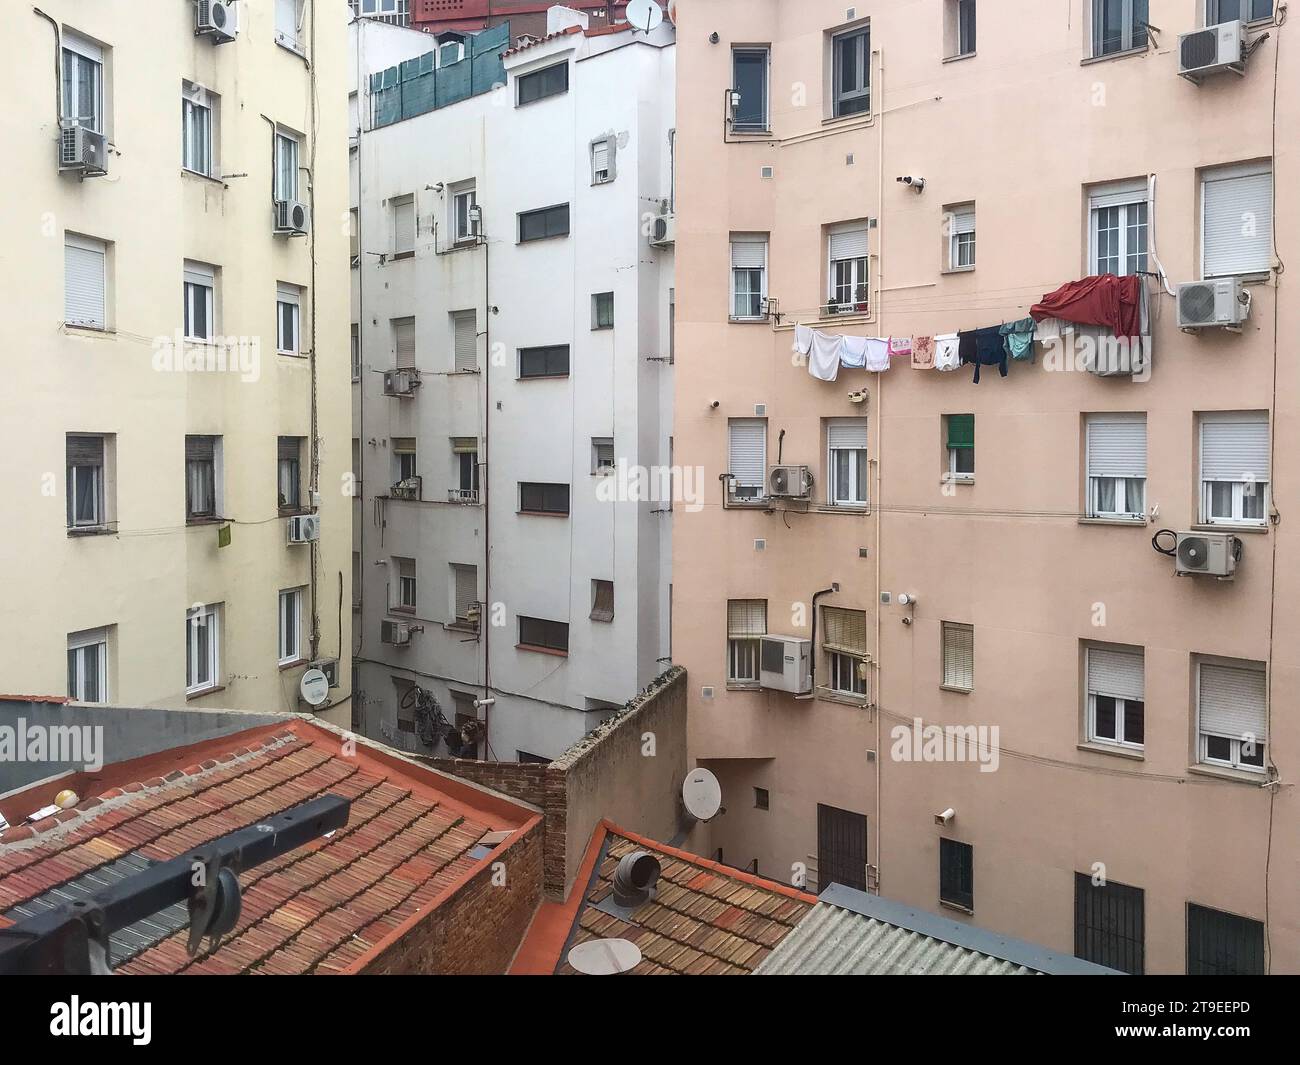 Linge suspendu à un fil dans la fenêtre d'un immeuble dans un quartier de Madrid, Espagne Banque D'Images